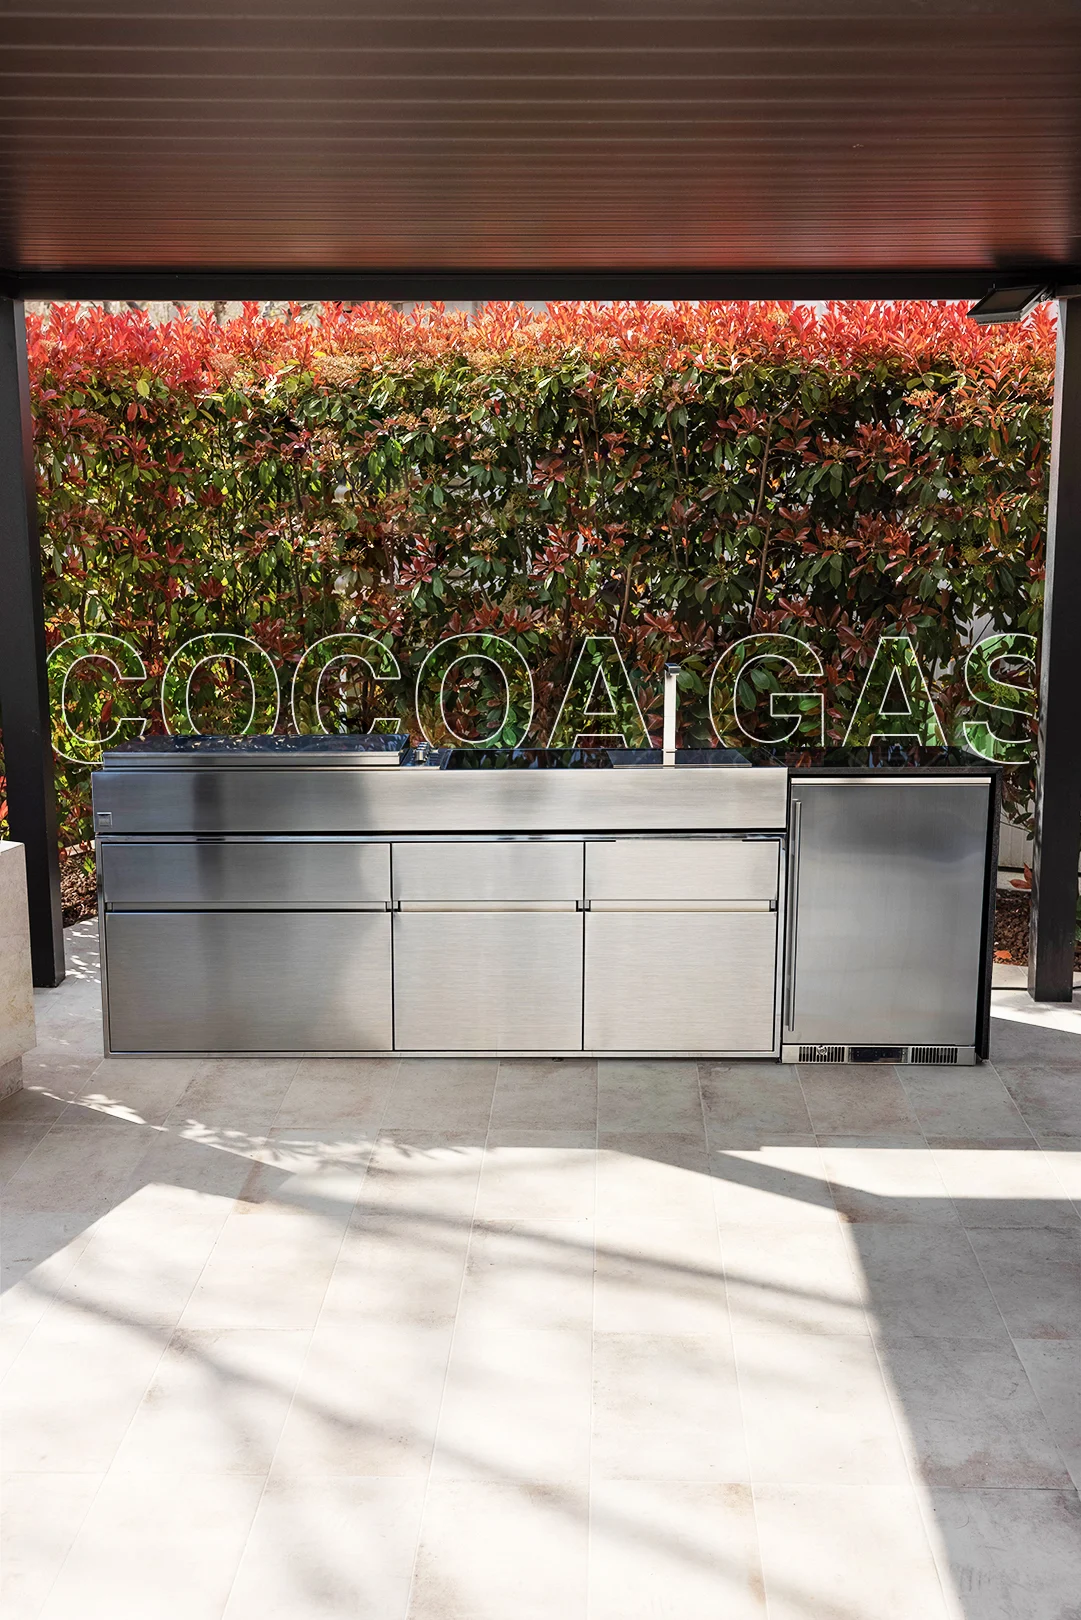 modular outdoor kitchen island